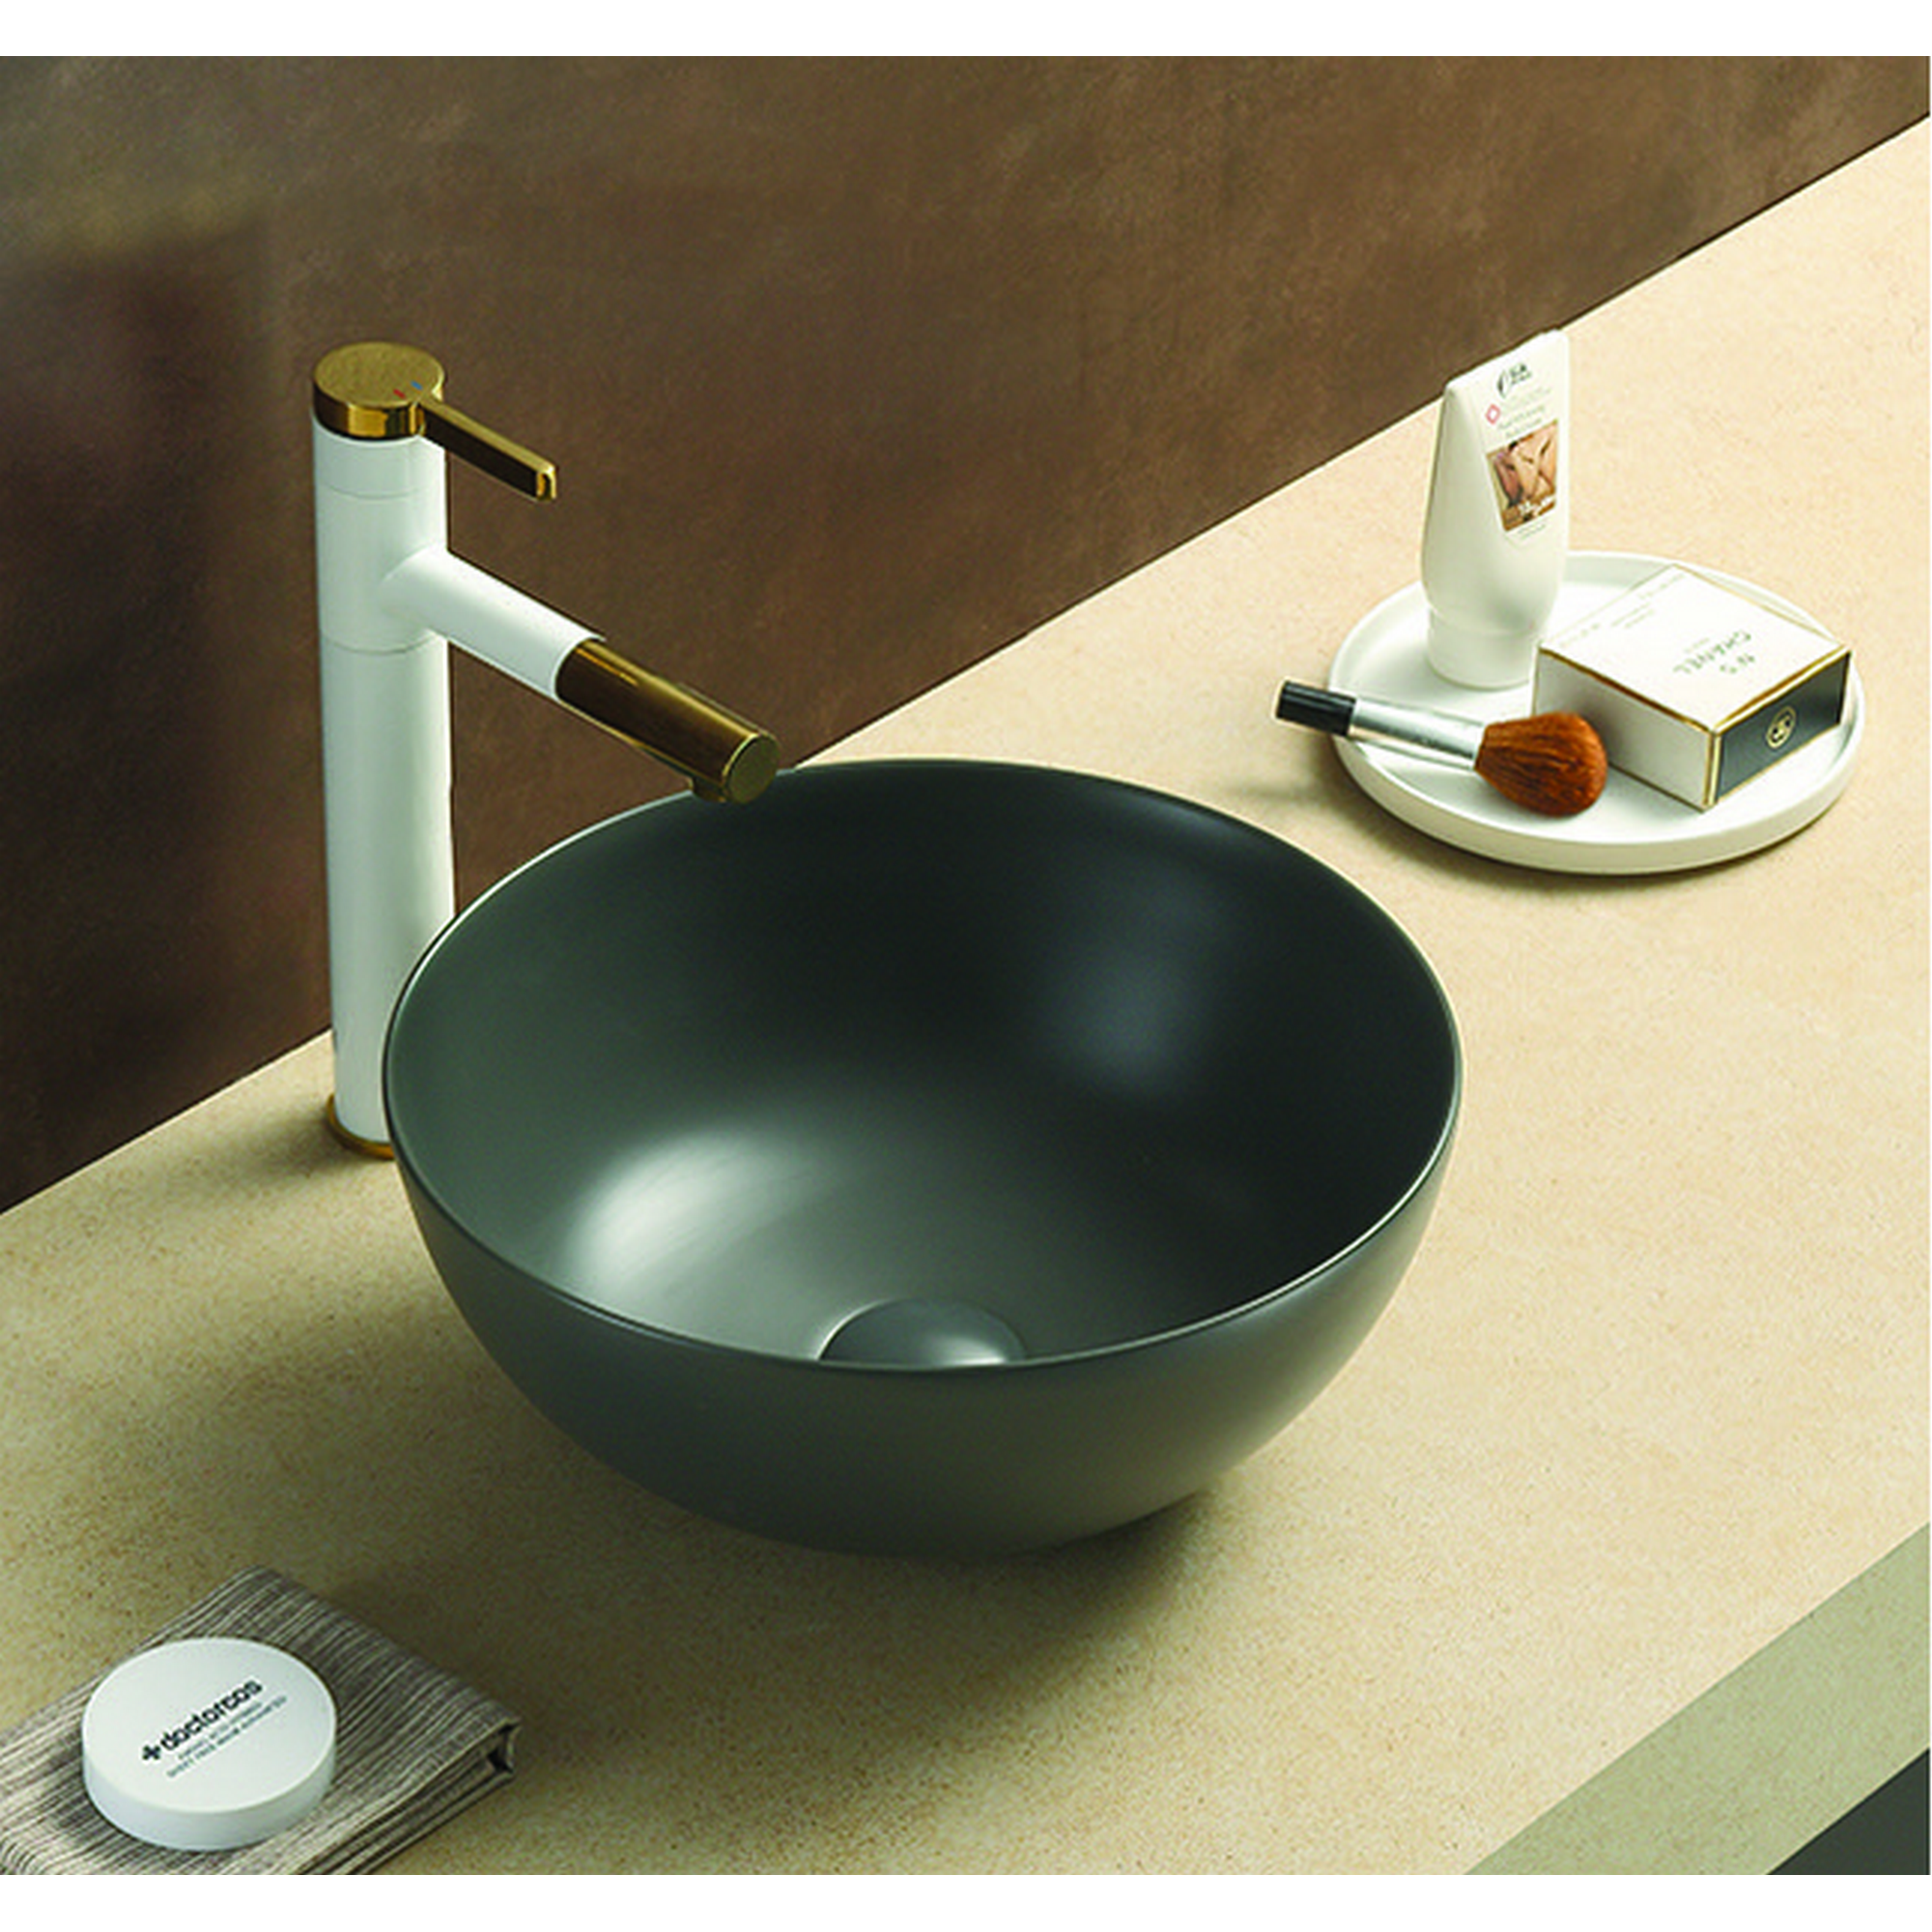 Aufsatzwaschtisch 'Aves' Keramik matt dark grey Ø 35,8 x 15,5 cm + product picture